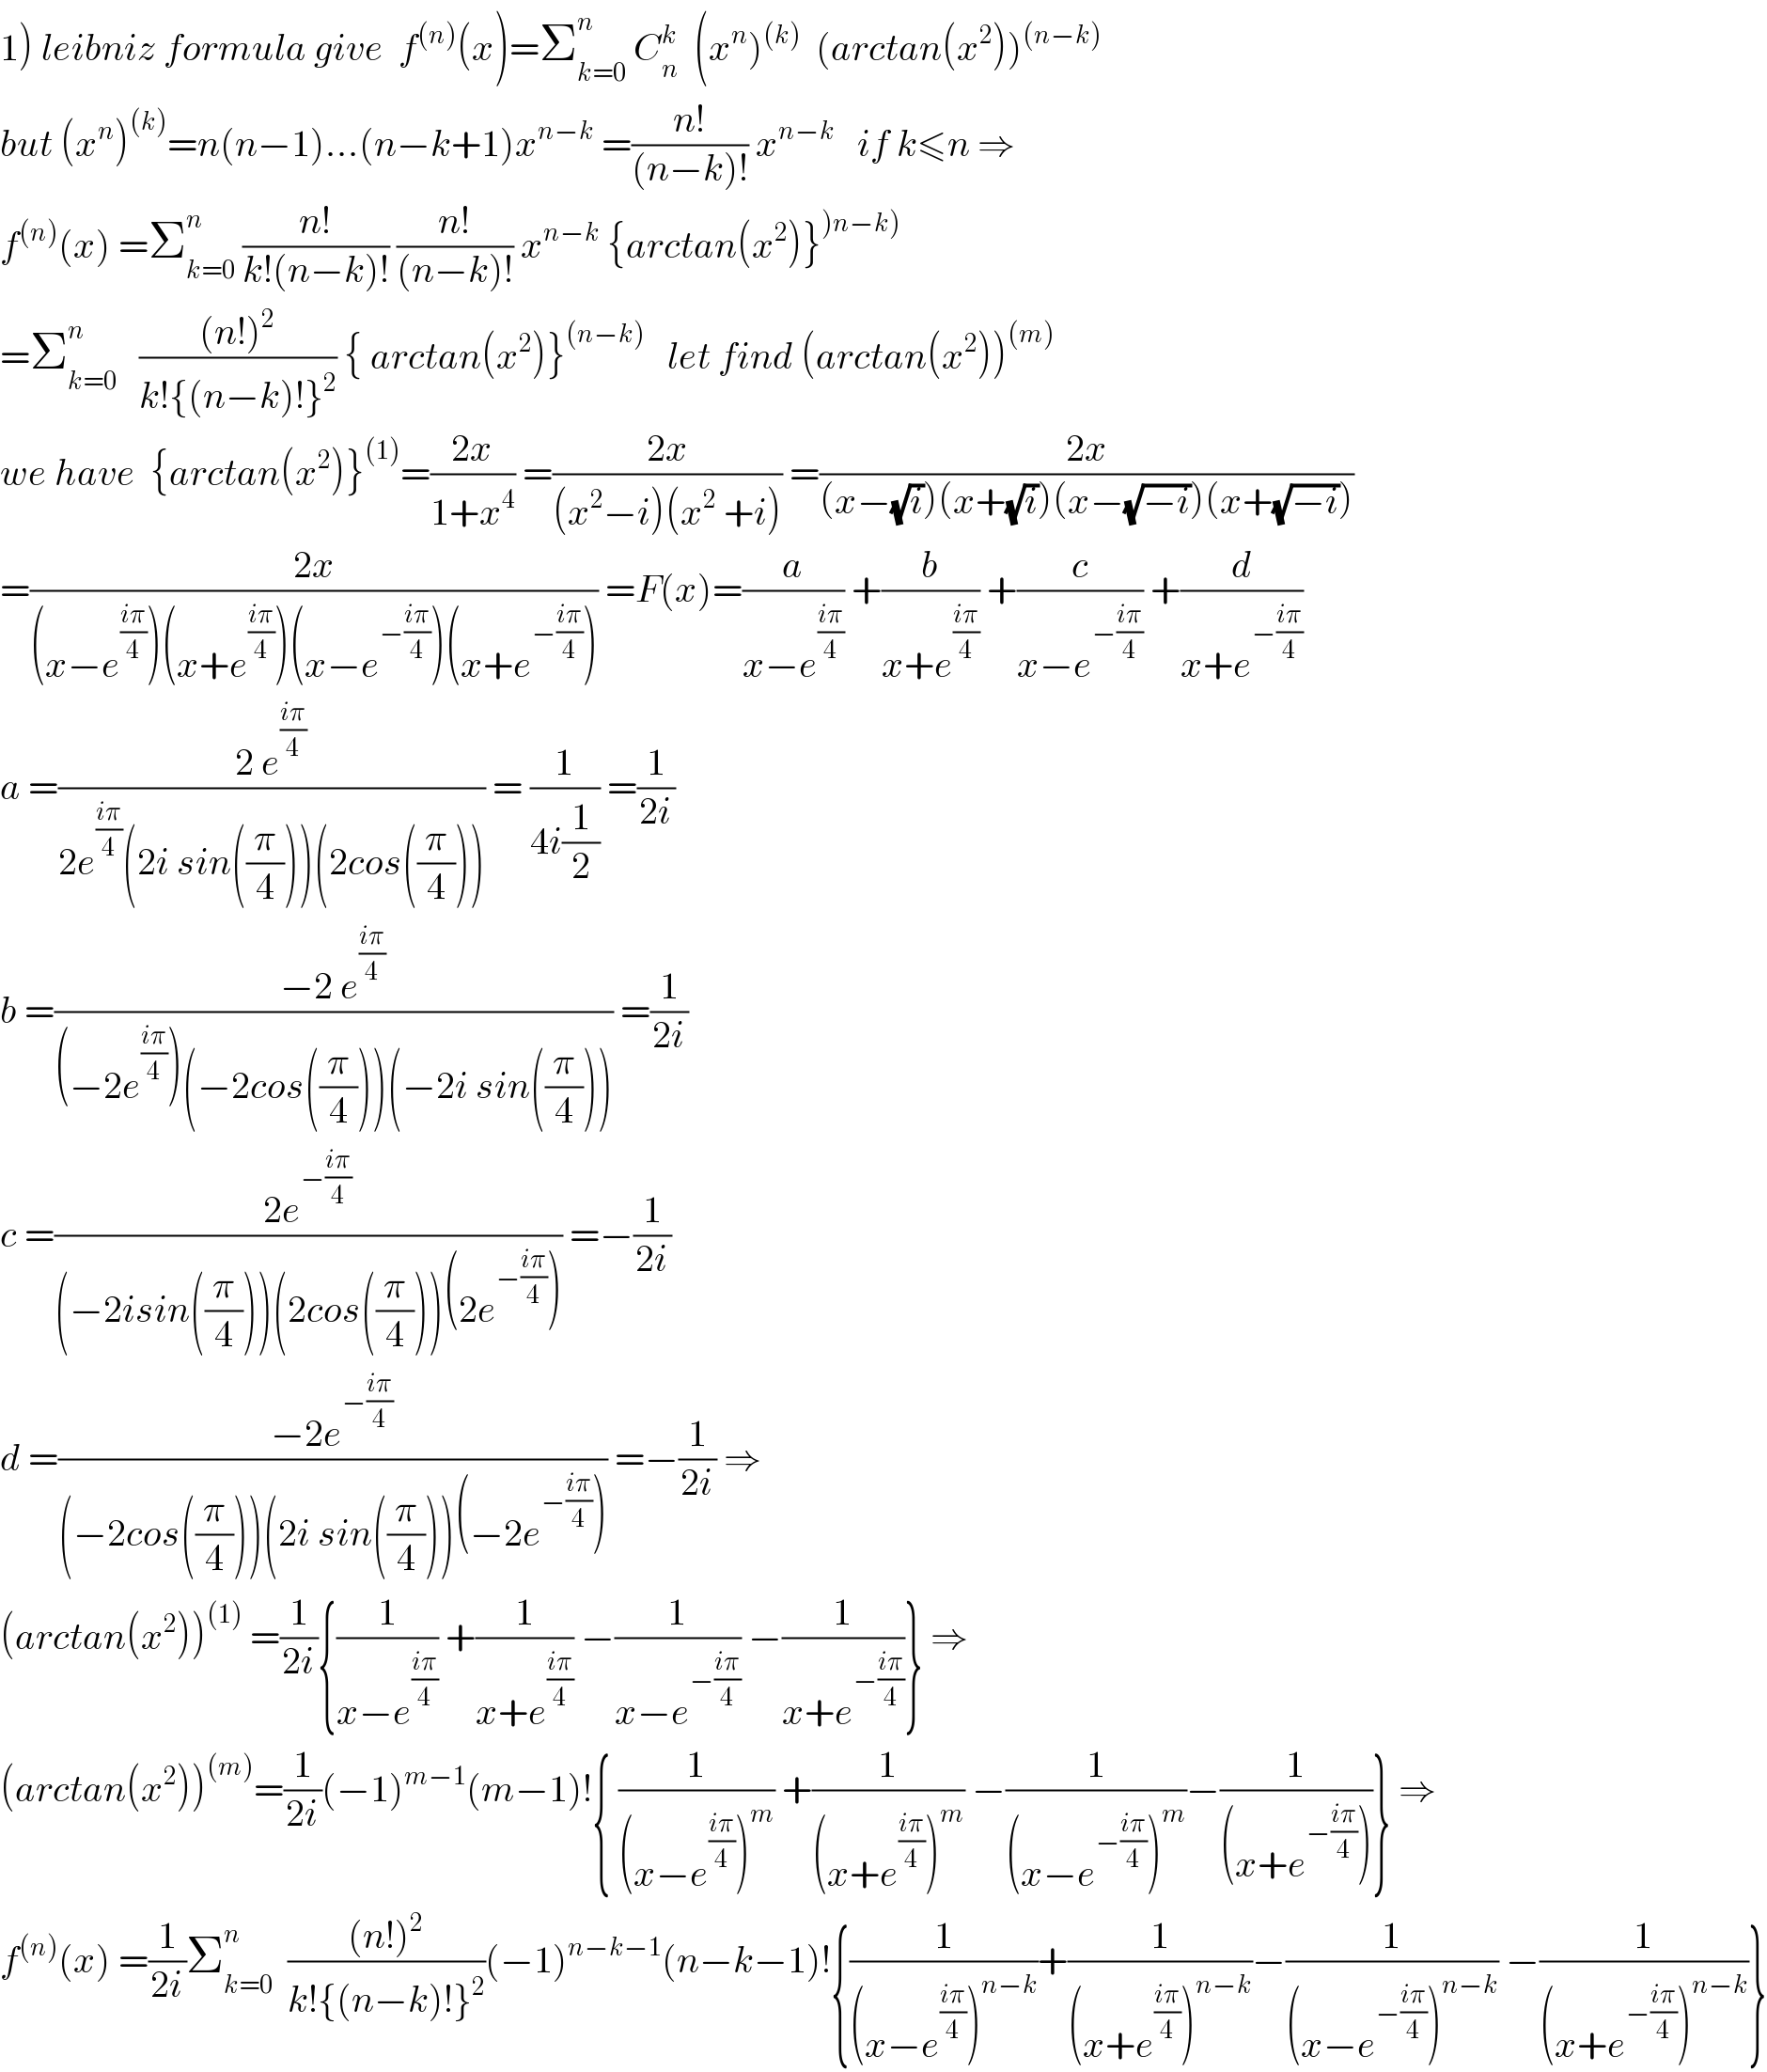 1) leibniz formula give  f^((n)) (x)=Σ_(k=0) ^n  C_n ^k   (x^n )^((k))   (arctan(x^2 ))^((n−k))   but (x^n )^((k)) =n(n−1)...(n−k+1)x^(n−k)  =((n!)/((n−k)!)) x^(n−k)    if k≤n ⇒  f^((n)) (x) =Σ_(k=0) ^n  ((n!)/(k!(n−k)!)) ((n!)/((n−k)!)) x^(n−k)  {arctan(x^2 )}^()n−k))   =Σ_(k=0) ^n    (((n!)^2 )/(k!{(n−k)!}^2 )) { arctan(x^2 )}^((n−k))    let find (arctan(x^2 ))^((m))   we have  {arctan(x^2 )}^((1)) =((2x)/(1+x^4 )) =((2x)/((x^2 −i)(x^2  +i))) =((2x)/((x−(√i))(x+(√i))(x−(√(−i)))(x+(√(−i)))))  =((2x)/((x−e^((iπ)/4) )(x+e^((iπ)/4) )(x−e^(−((iπ)/4)) )(x+e^(−((iπ)/4)) ))) =F(x)=(a/(x−e^((iπ)/4) )) +(b/(x+e^((iπ)/4) )) +(c/(x−e^(−((iπ)/4)) )) +(d/(x+e^(−((iπ)/4)) ))  a =((2 e^((iπ)/4) )/(2e^((iπ)/4) (2i sin((π/4)))(2cos((π/4))))) = (1/(4i(1/2))) =(1/(2i))  b =((−2 e^((iπ)/4) )/((−2e^((iπ)/4) )(−2cos((π/4)))(−2i sin((π/4))))) =(1/(2i))  c =((2e^(−((iπ)/4)) )/((−2isin((π/4)))(2cos((π/4)))(2e^(−((iπ)/4)) ))) =−(1/(2i))  d =((−2e^(−((iπ)/4)) )/((−2cos((π/4)))(2i sin((π/4)))(−2e^(−((iπ)/4)) ))) =−(1/(2i)) ⇒  (arctan(x^2 ))^((1))  =(1/(2i)){(1/(x−e^((iπ)/4) )) +(1/(x+e^((iπ)/4) )) −(1/(x−e^(−((iπ)/4)) )) −(1/(x+e^(−((iπ)/4)) ))} ⇒  (arctan(x^2 ))^((m)) =(1/(2i))(−1)^(m−1) (m−1)!{ (1/((x−e^((iπ)/4) )^m )) +(1/((x+e^((iπ)/4) )^m )) −(1/((x−e^(−((iπ)/4)) )^m ))−(1/((x+e^(−((iπ)/4)) )))} ⇒  f^((n)) (x) =(1/(2i))Σ_(k=0) ^n   (((n!)^2 )/(k!{(n−k)!}^2 ))(−1)^(n−k−1) (n−k−1)!{(1/((x−e^((iπ)/4) )^(n−k) ))+(1/((x+e^((iπ)/4) )^(n−k) ))−(1/((x−e^(−((iπ)/4)) )^(n−k) )) −(1/((x+e^(−((iπ)/4)) )^(n−k) ))}  